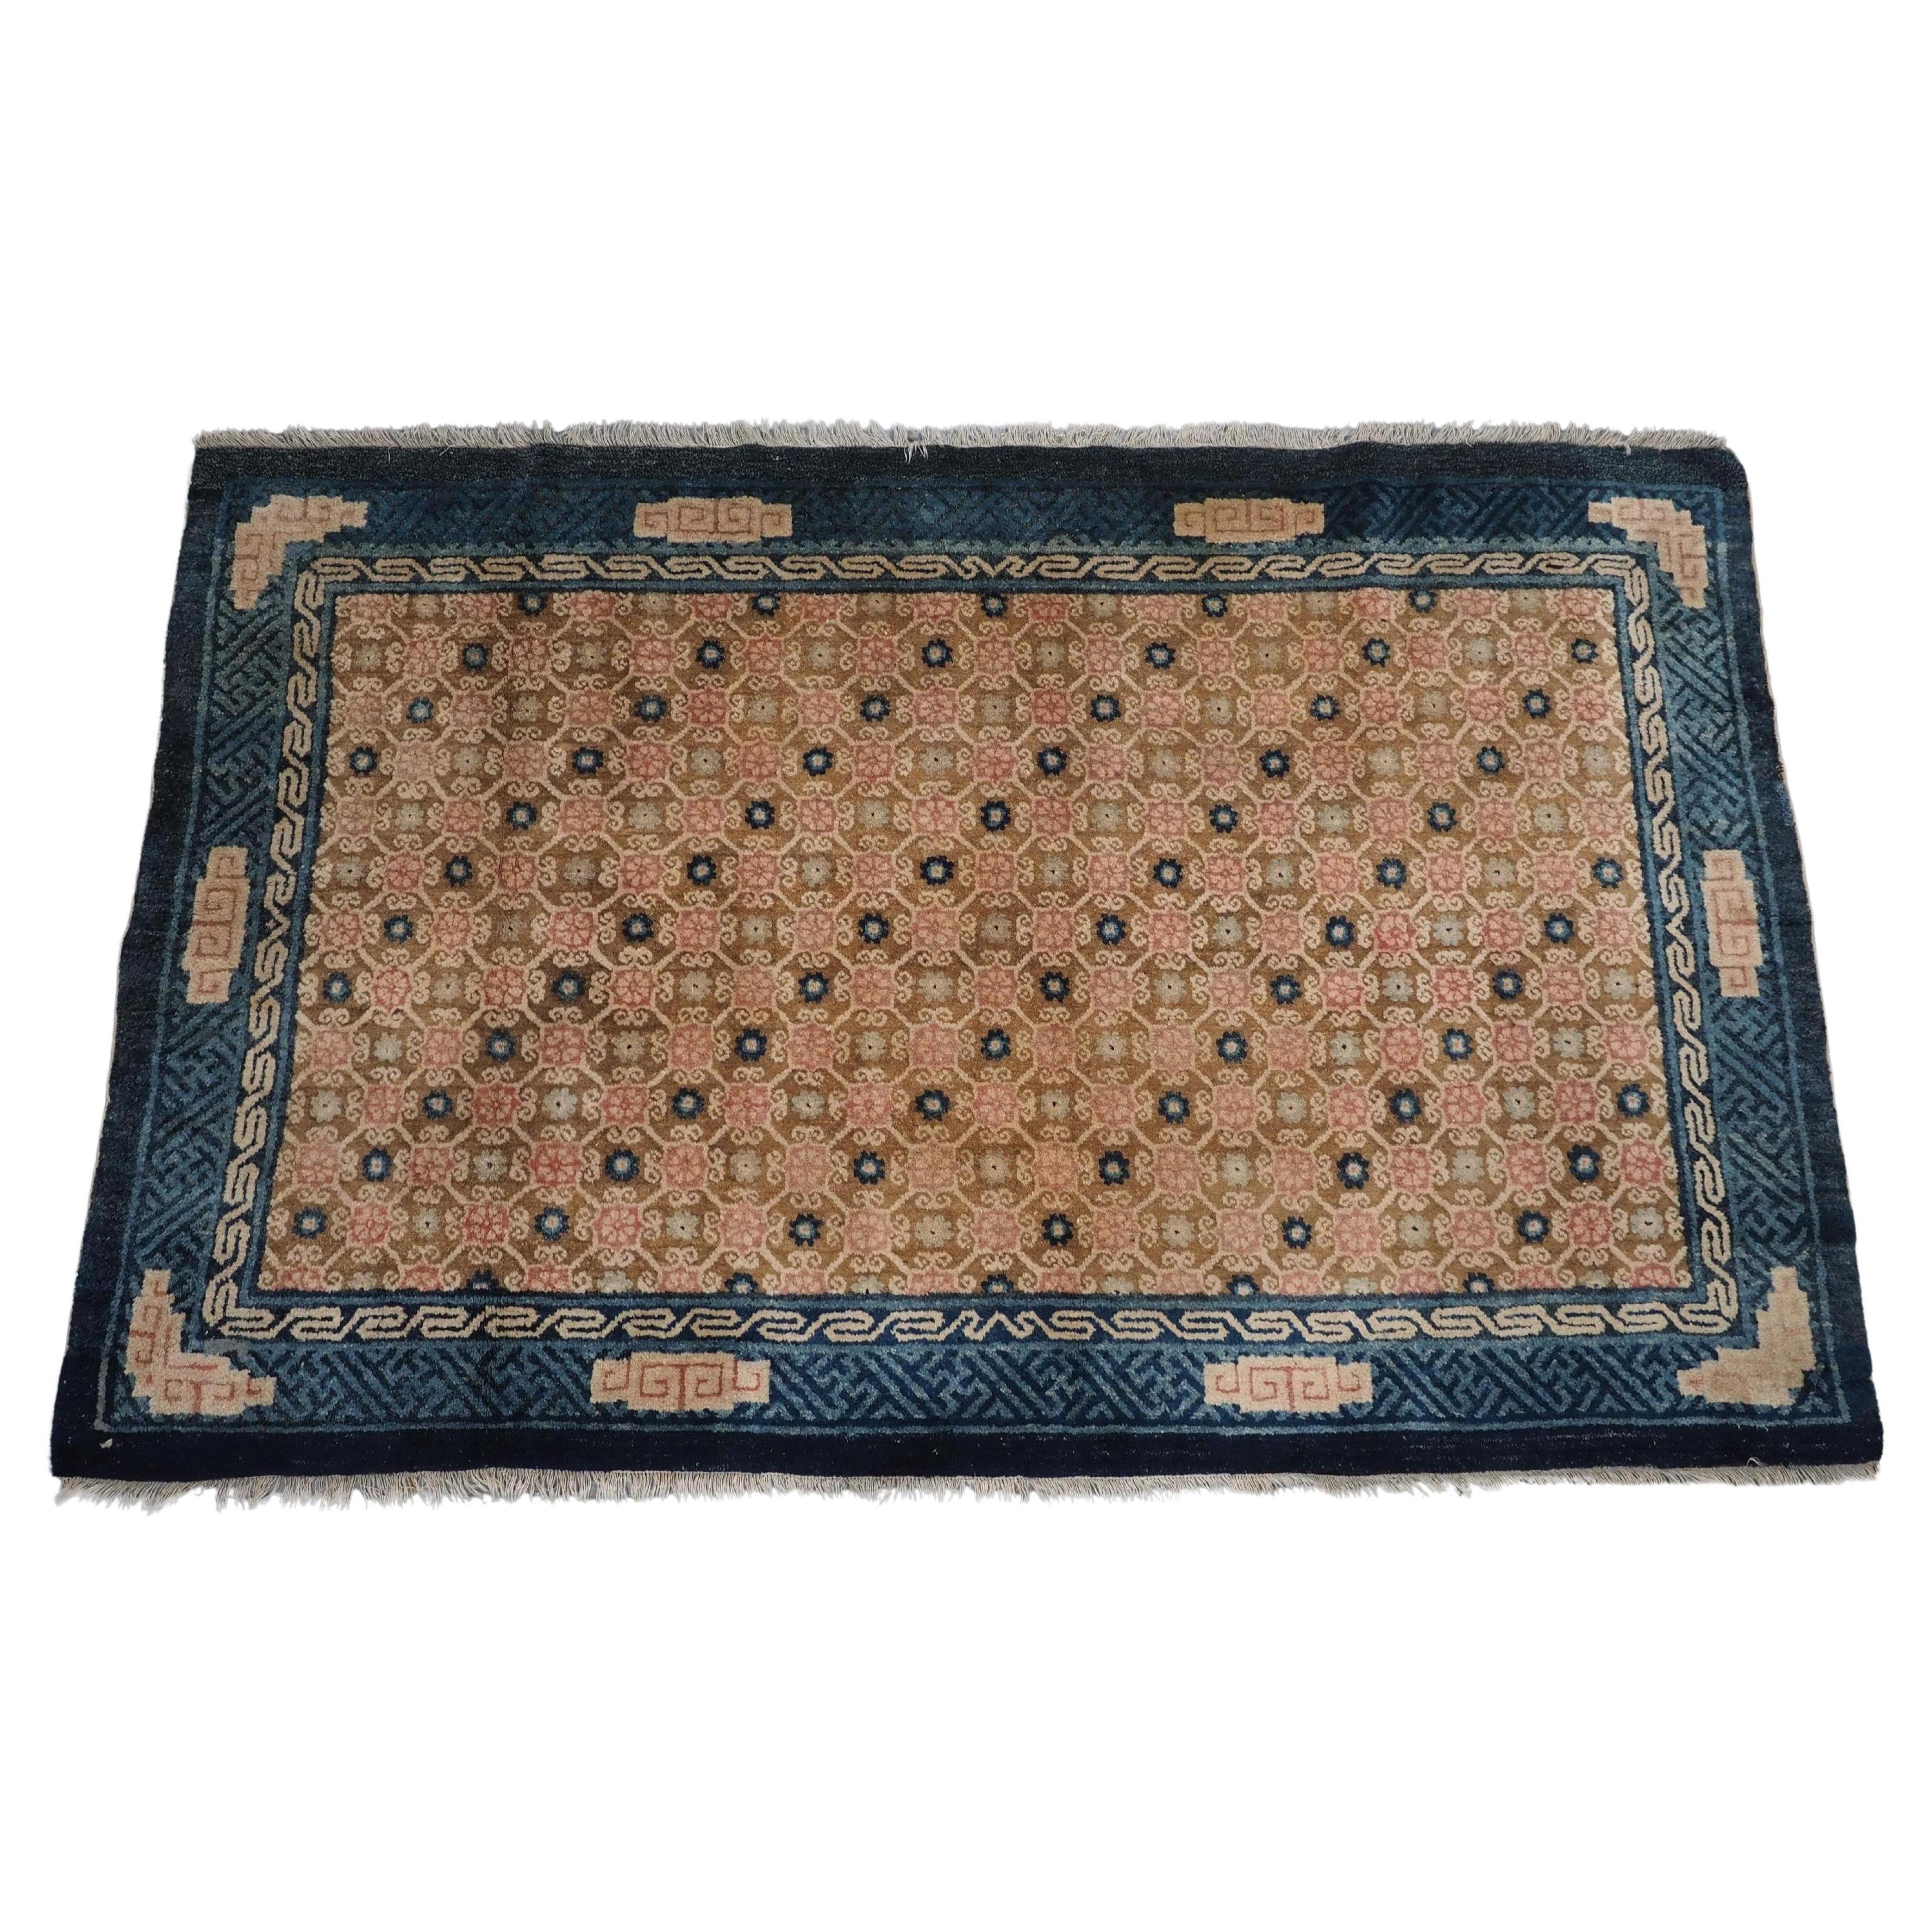 Antique Chinese Peking rug with lattice design.  Circa 1900.